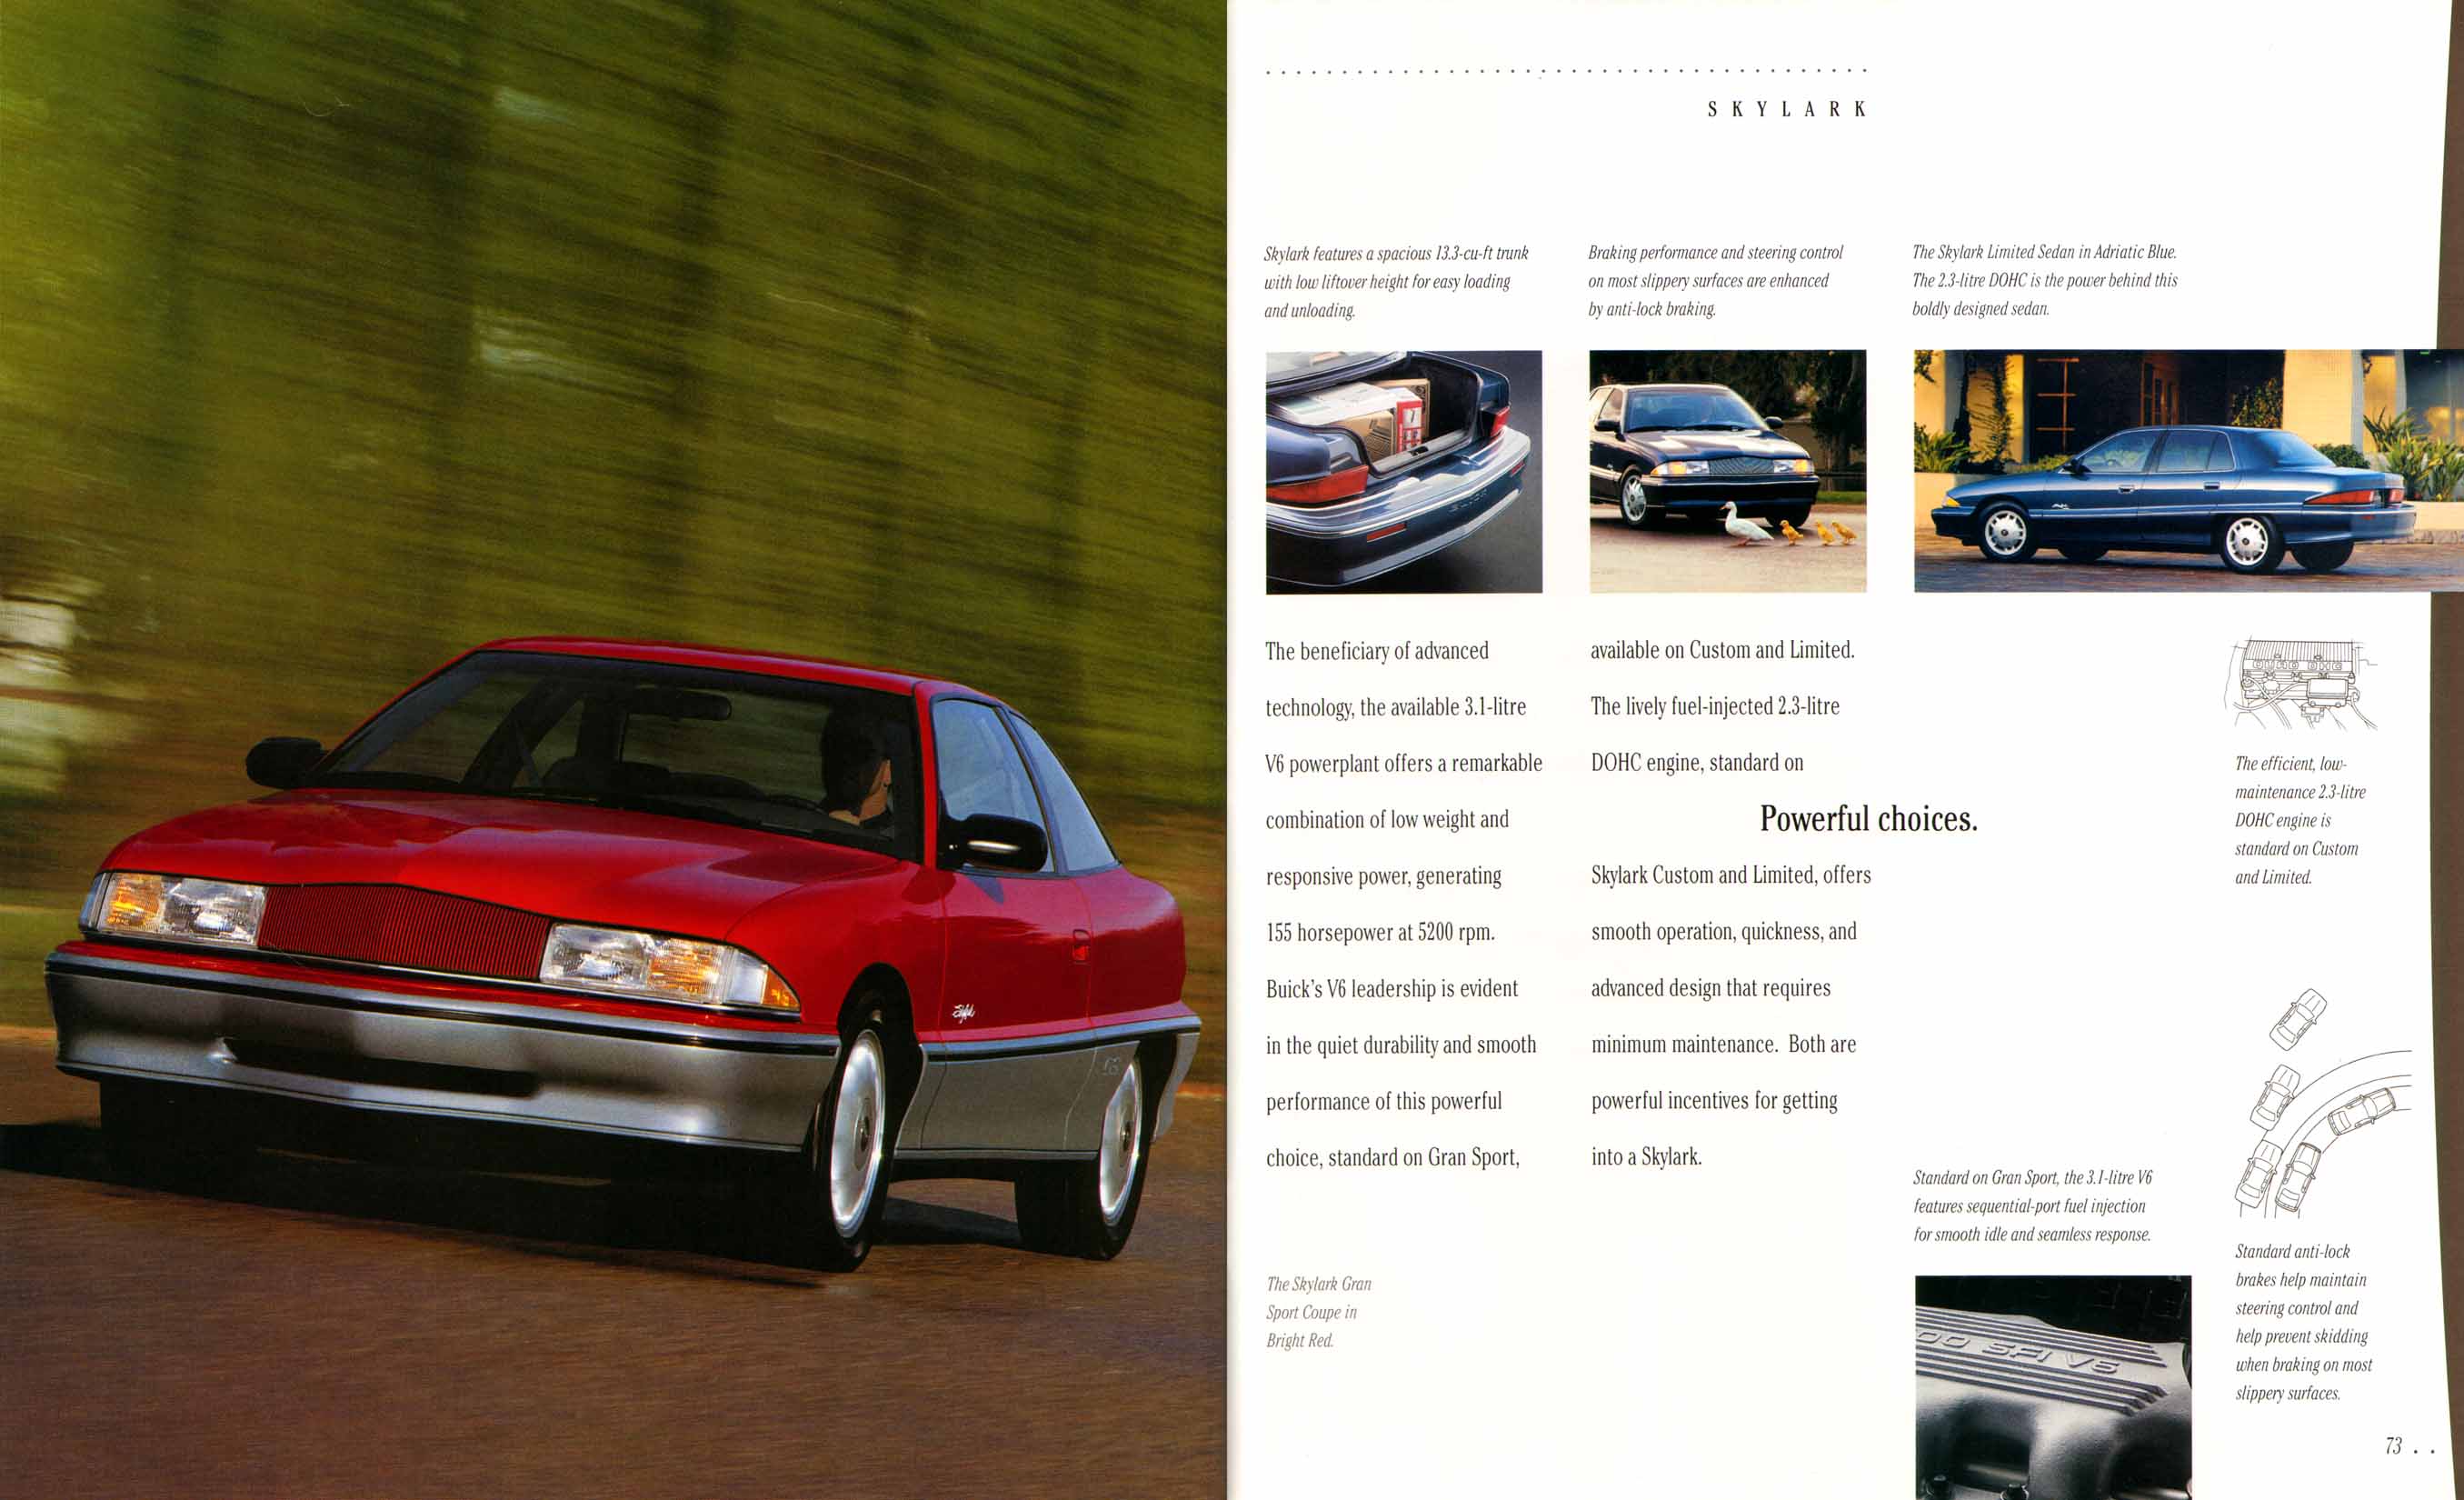 1995 Buick Full Line Prestige-72-73